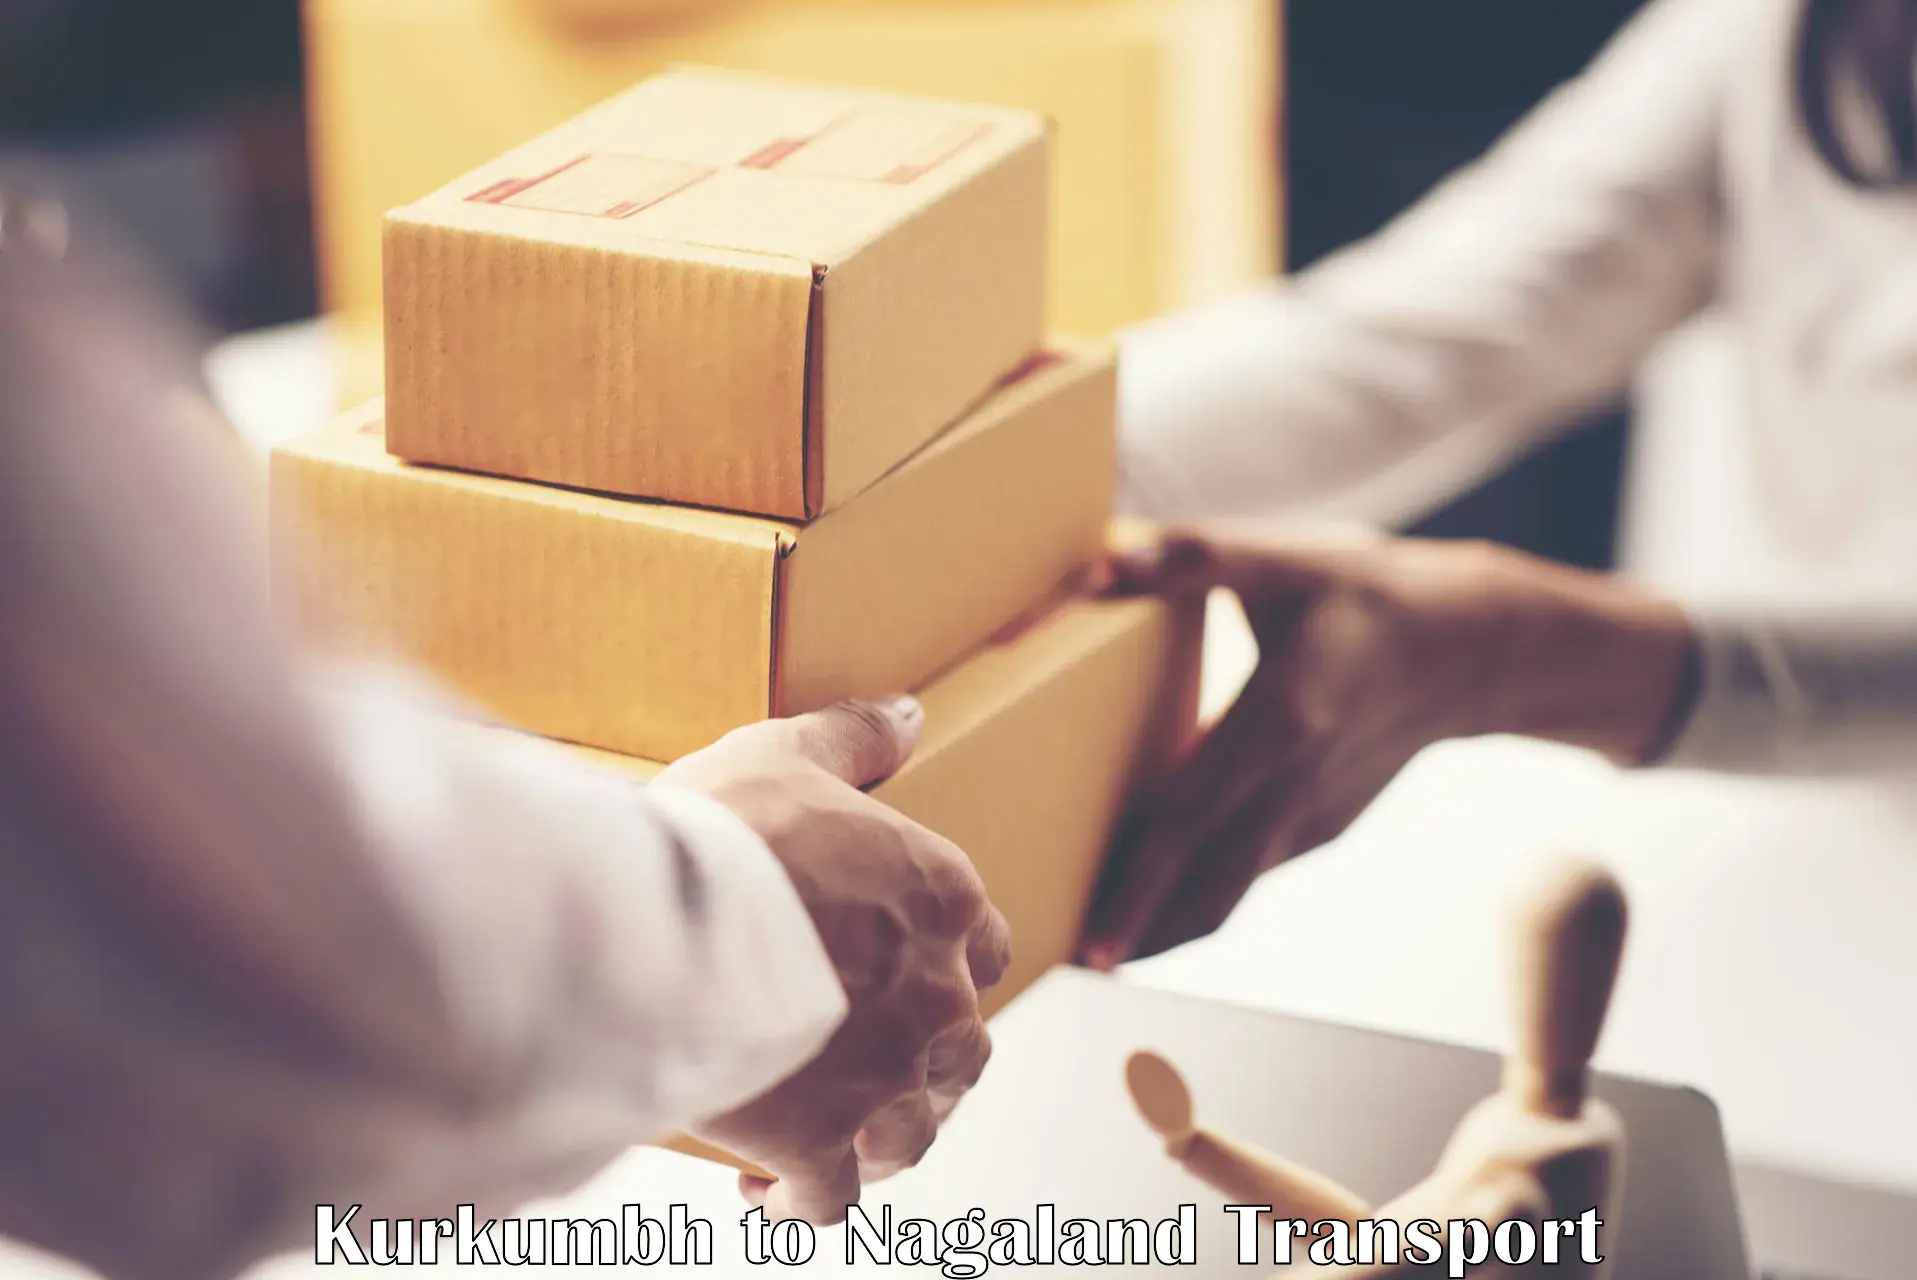 Shipping partner Kurkumbh to Dimapur